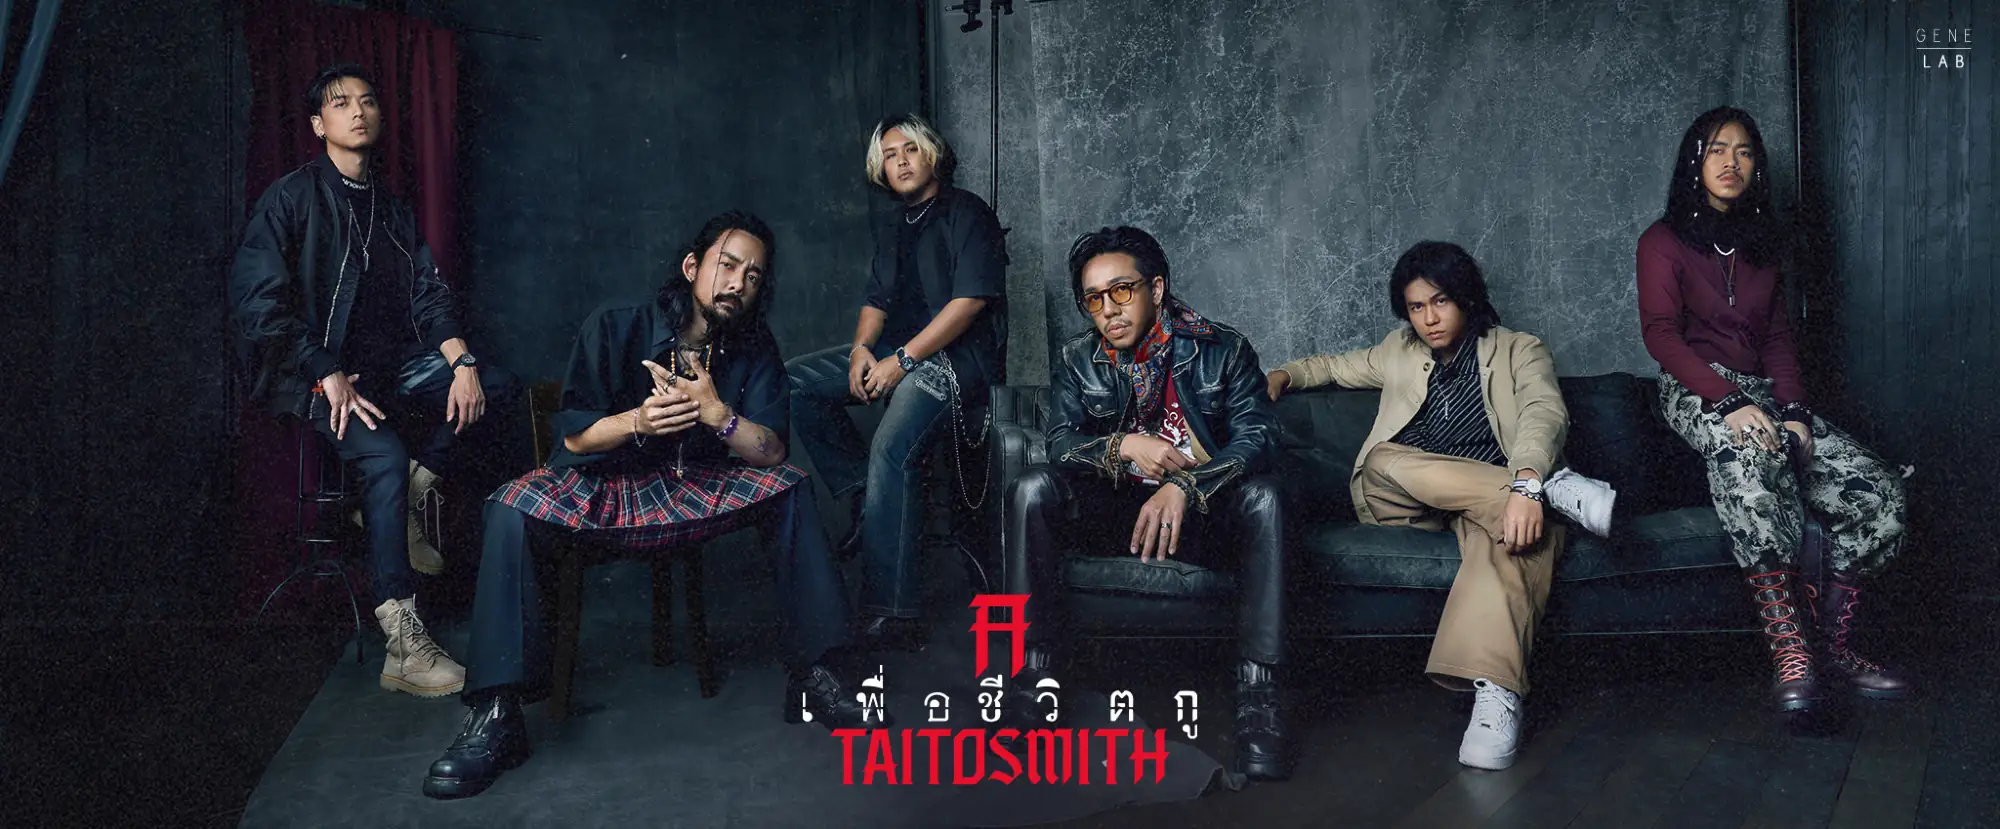 泰國樂團TaitosmitH由6位成員組合而成（圖片來源：官方臉書粉絲專頁）